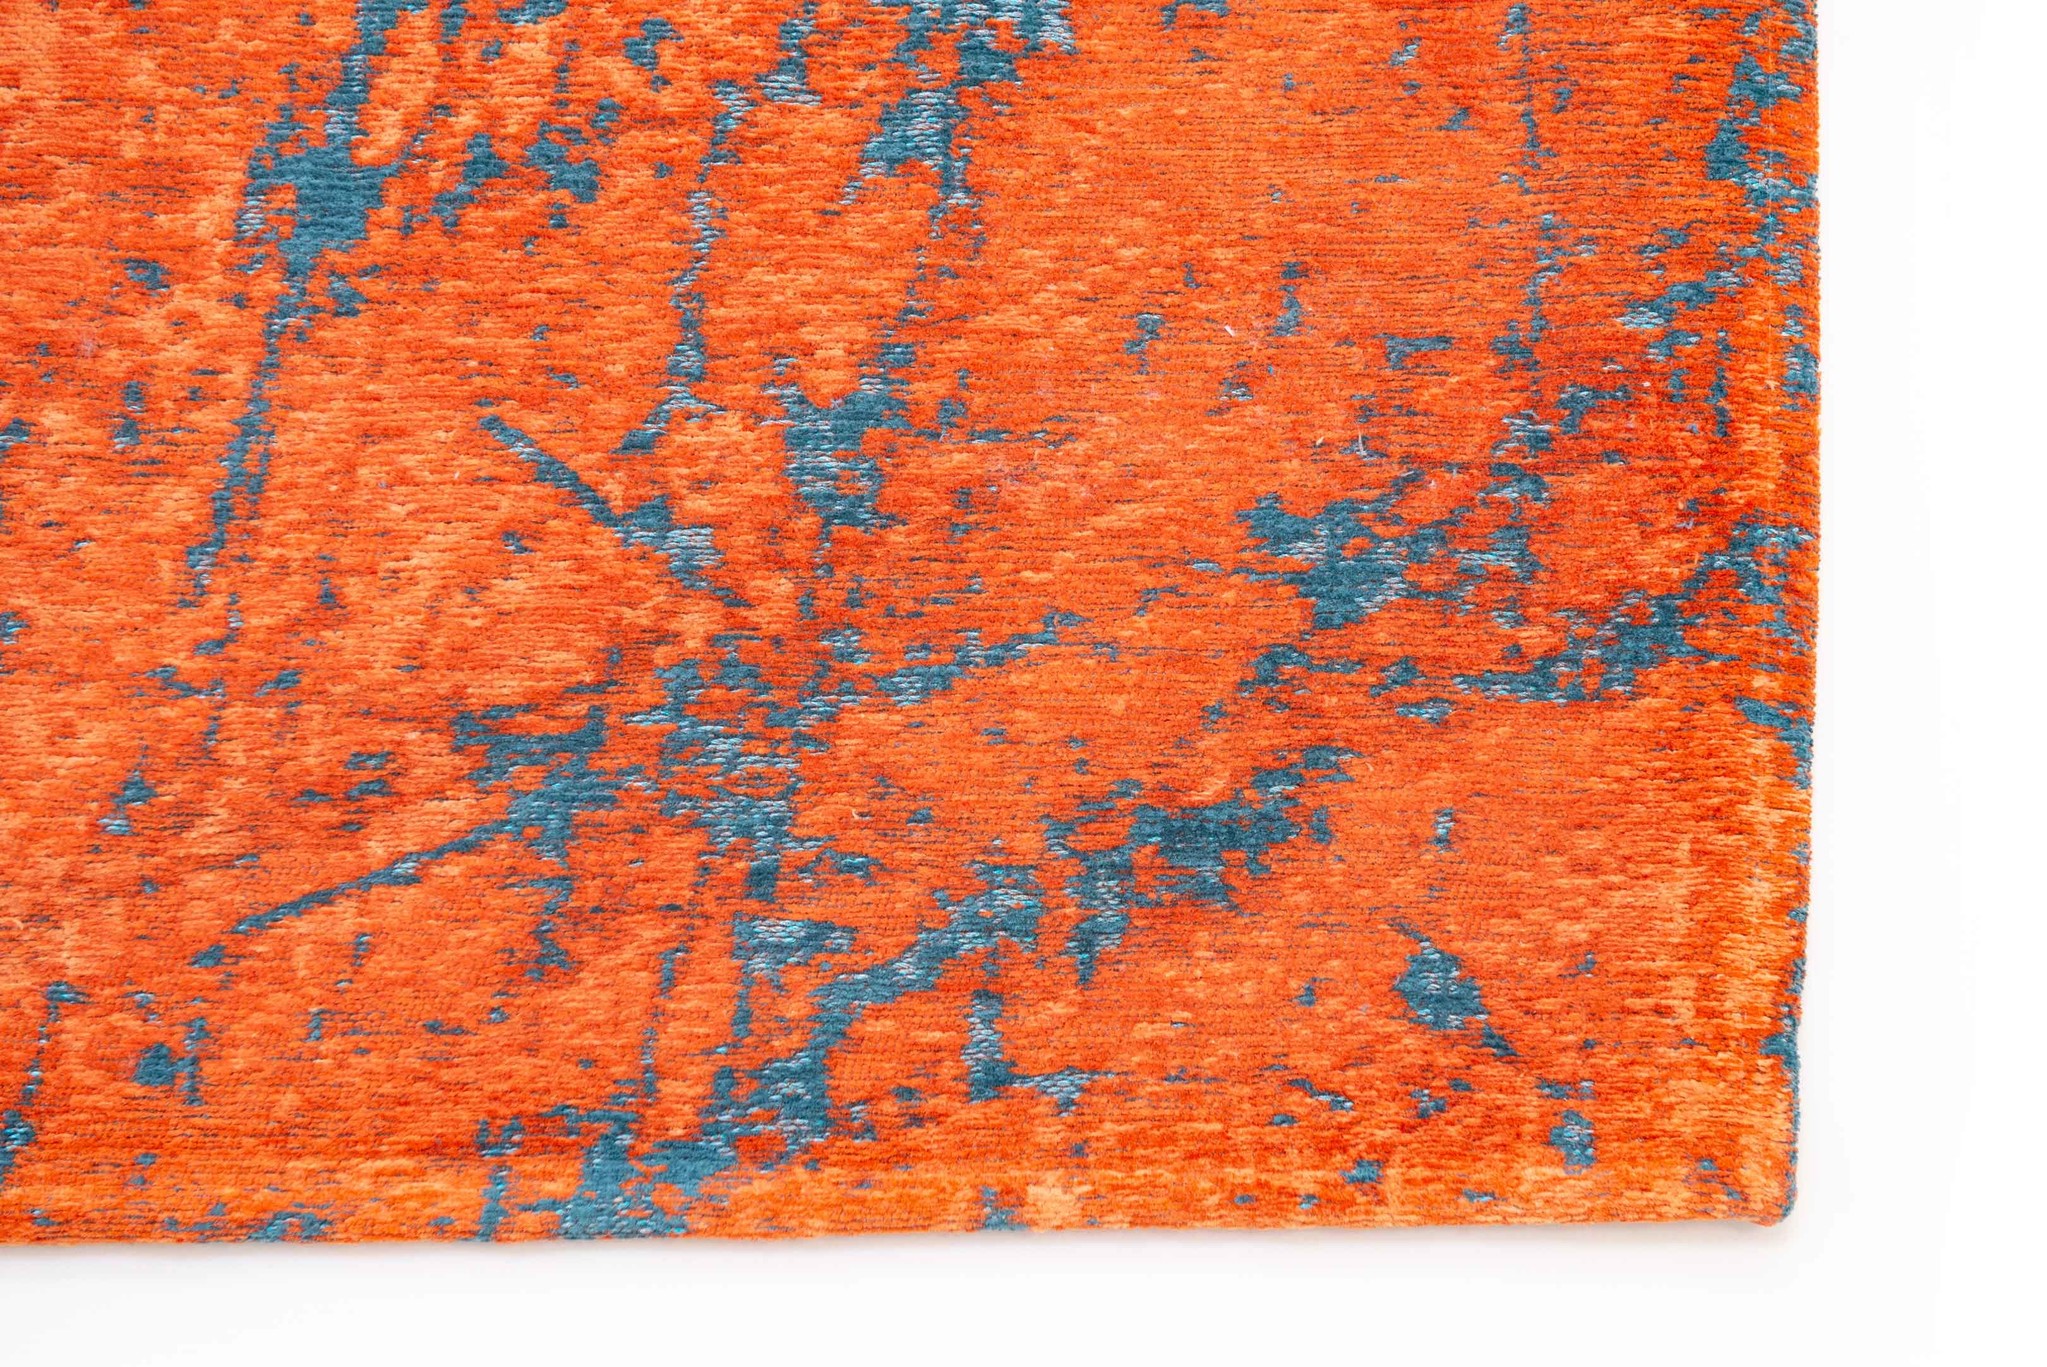 Art Orange Belgian Rug ☞ Size: 6' 7" x 9' 2" (200 x 280 cm)